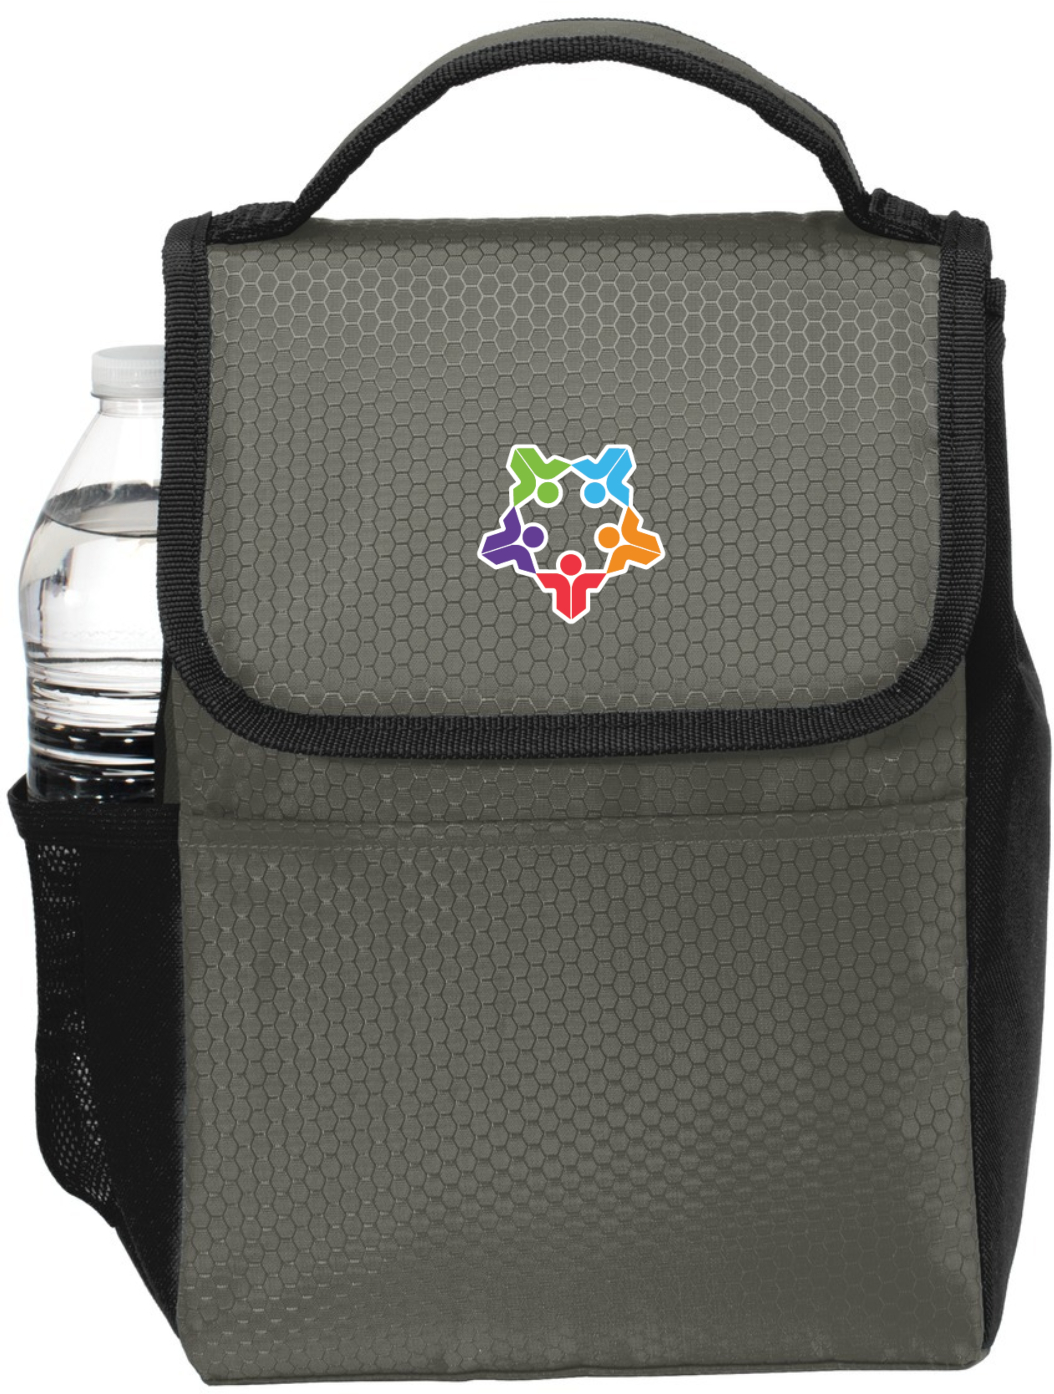 PSBA Standard Lunch Bag Cooler